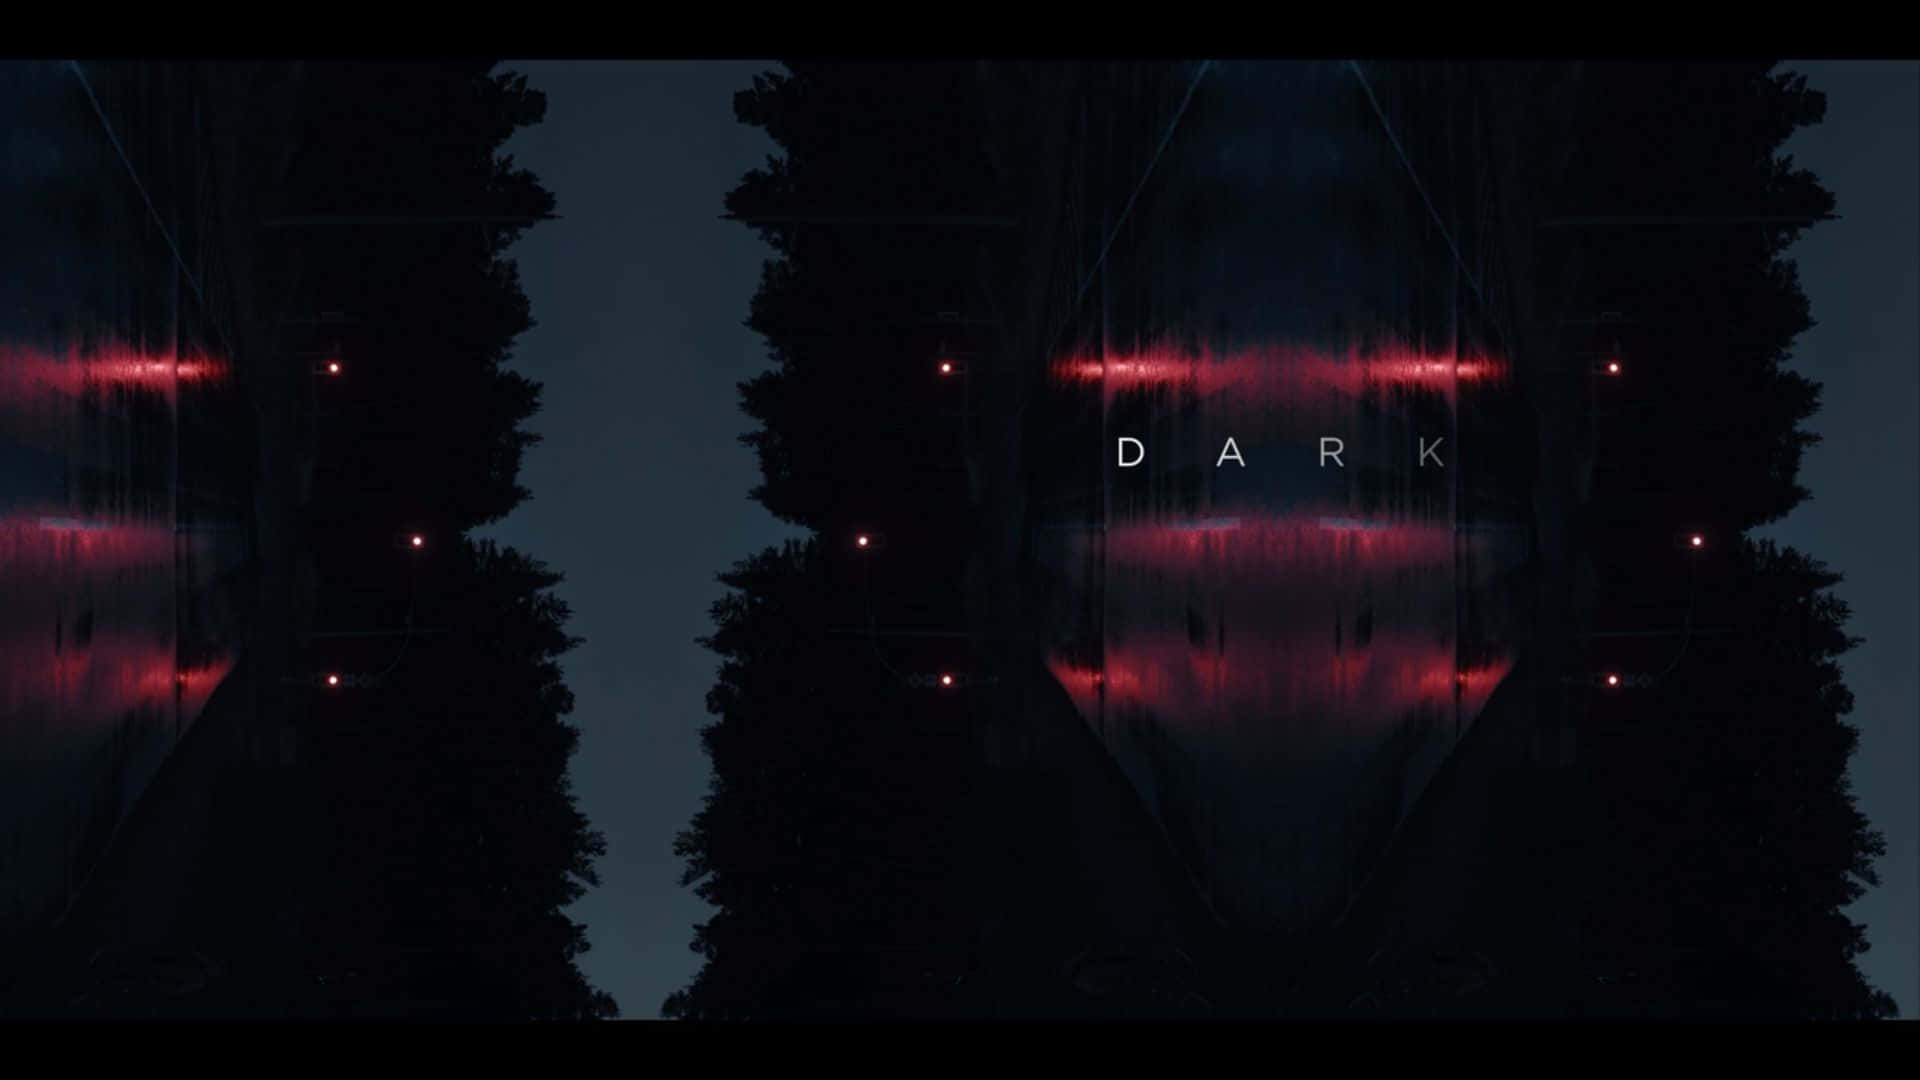 Dark - A Dark Forest With Red Lights Wallpaper